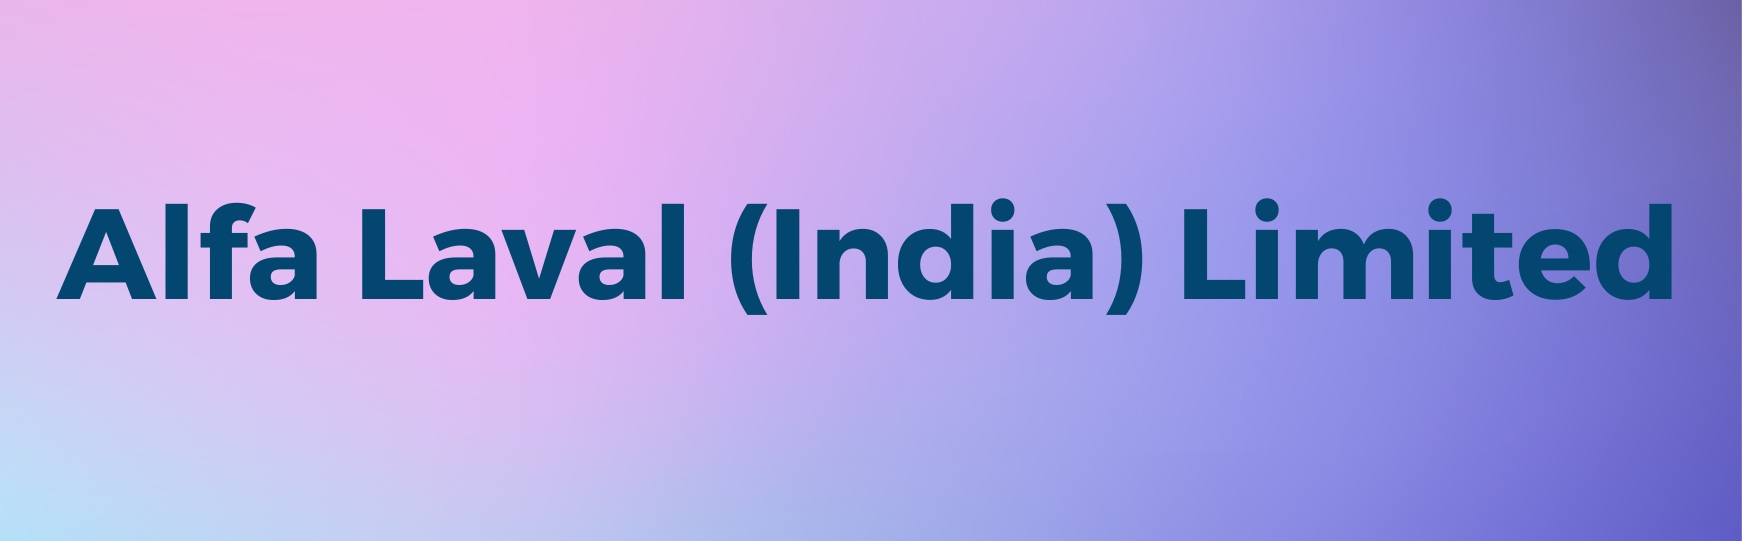 Alfa Laval (India) Limited.